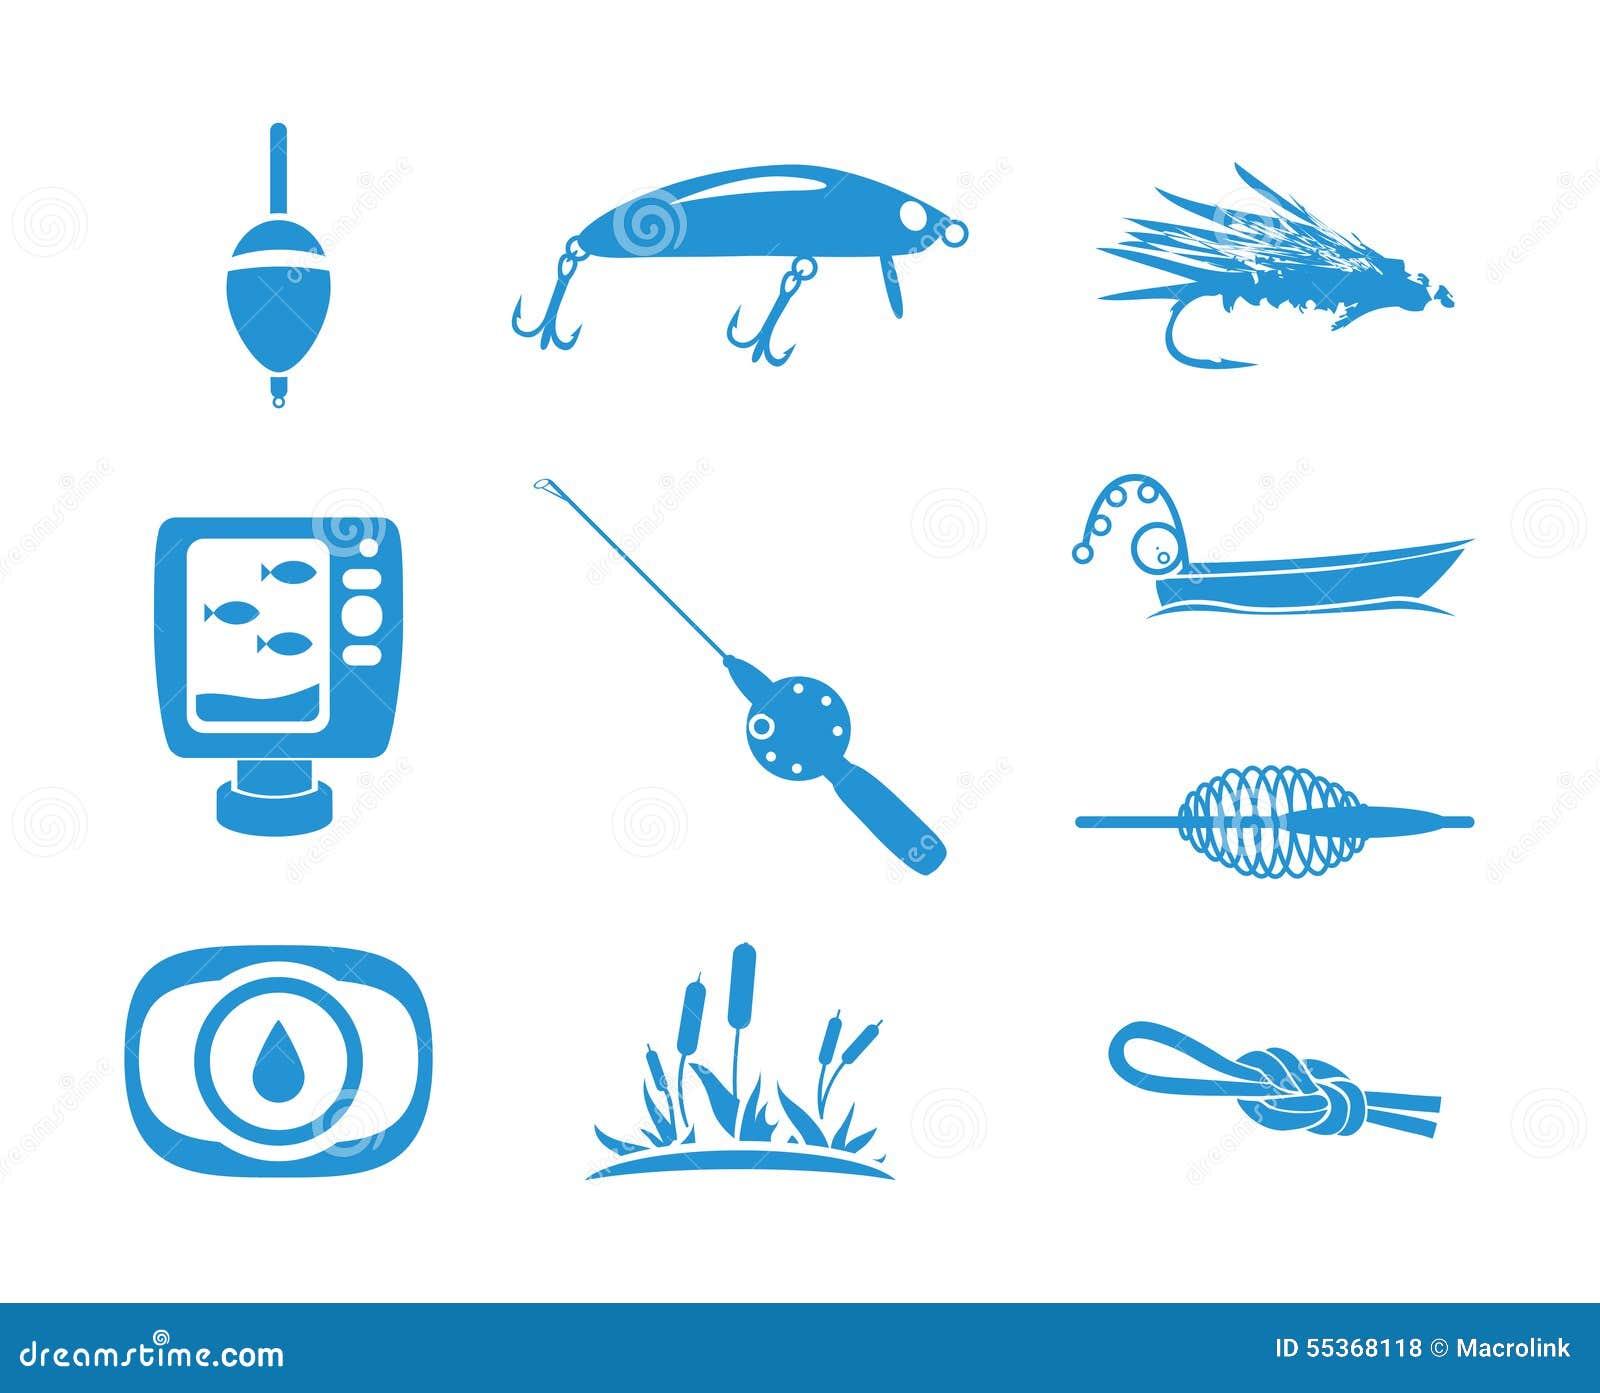 Fishing Equipments Stock Illustrations – 89 Fishing Equipments Stock  Illustrations, Vectors & Clipart - Dreamstime